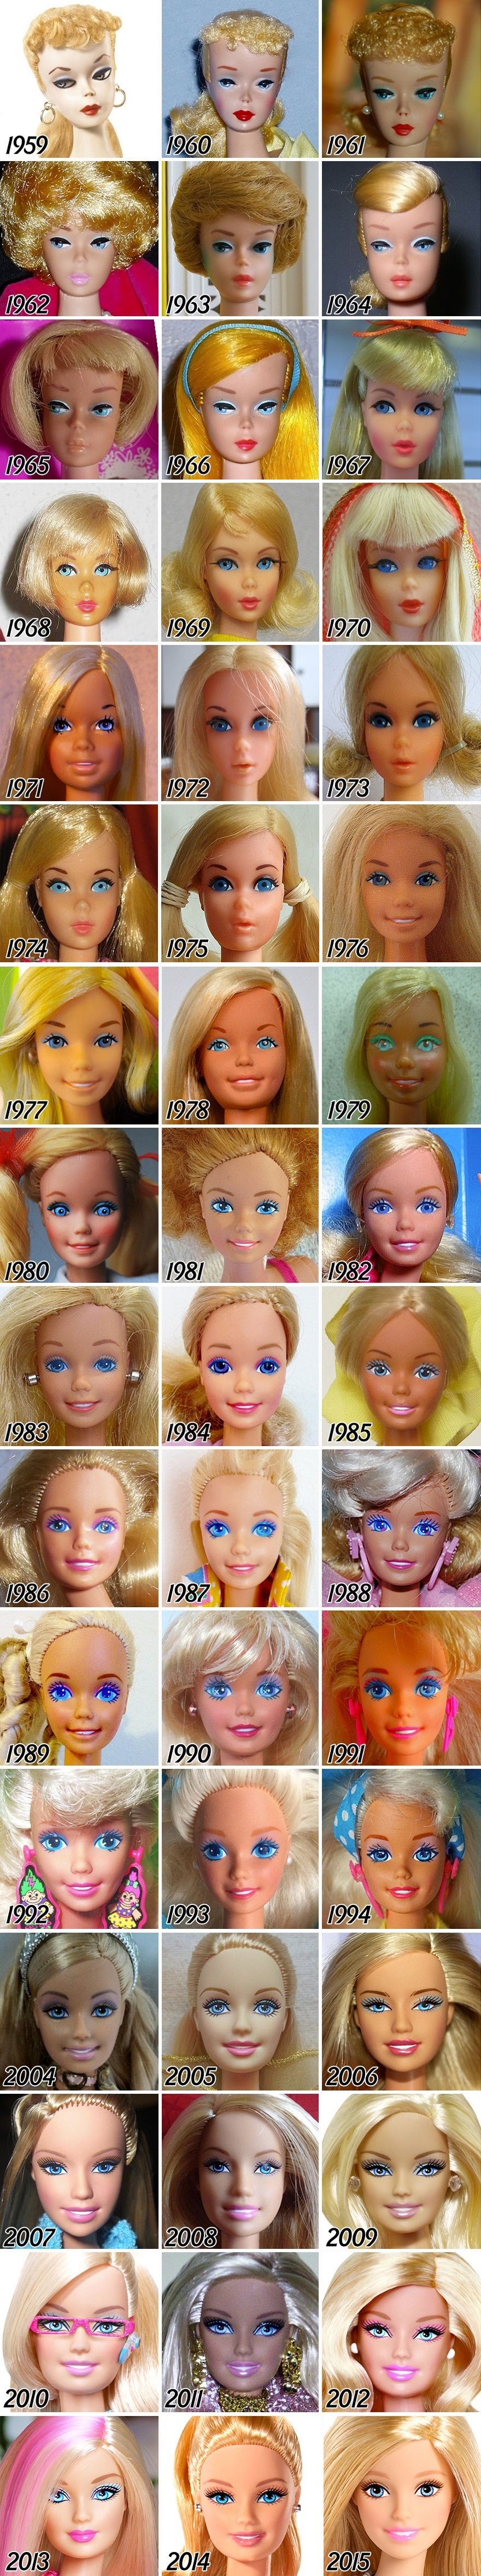 Барбі - 57 років: як старіла, товстіла та змінювалася популярна лялька - фото 1